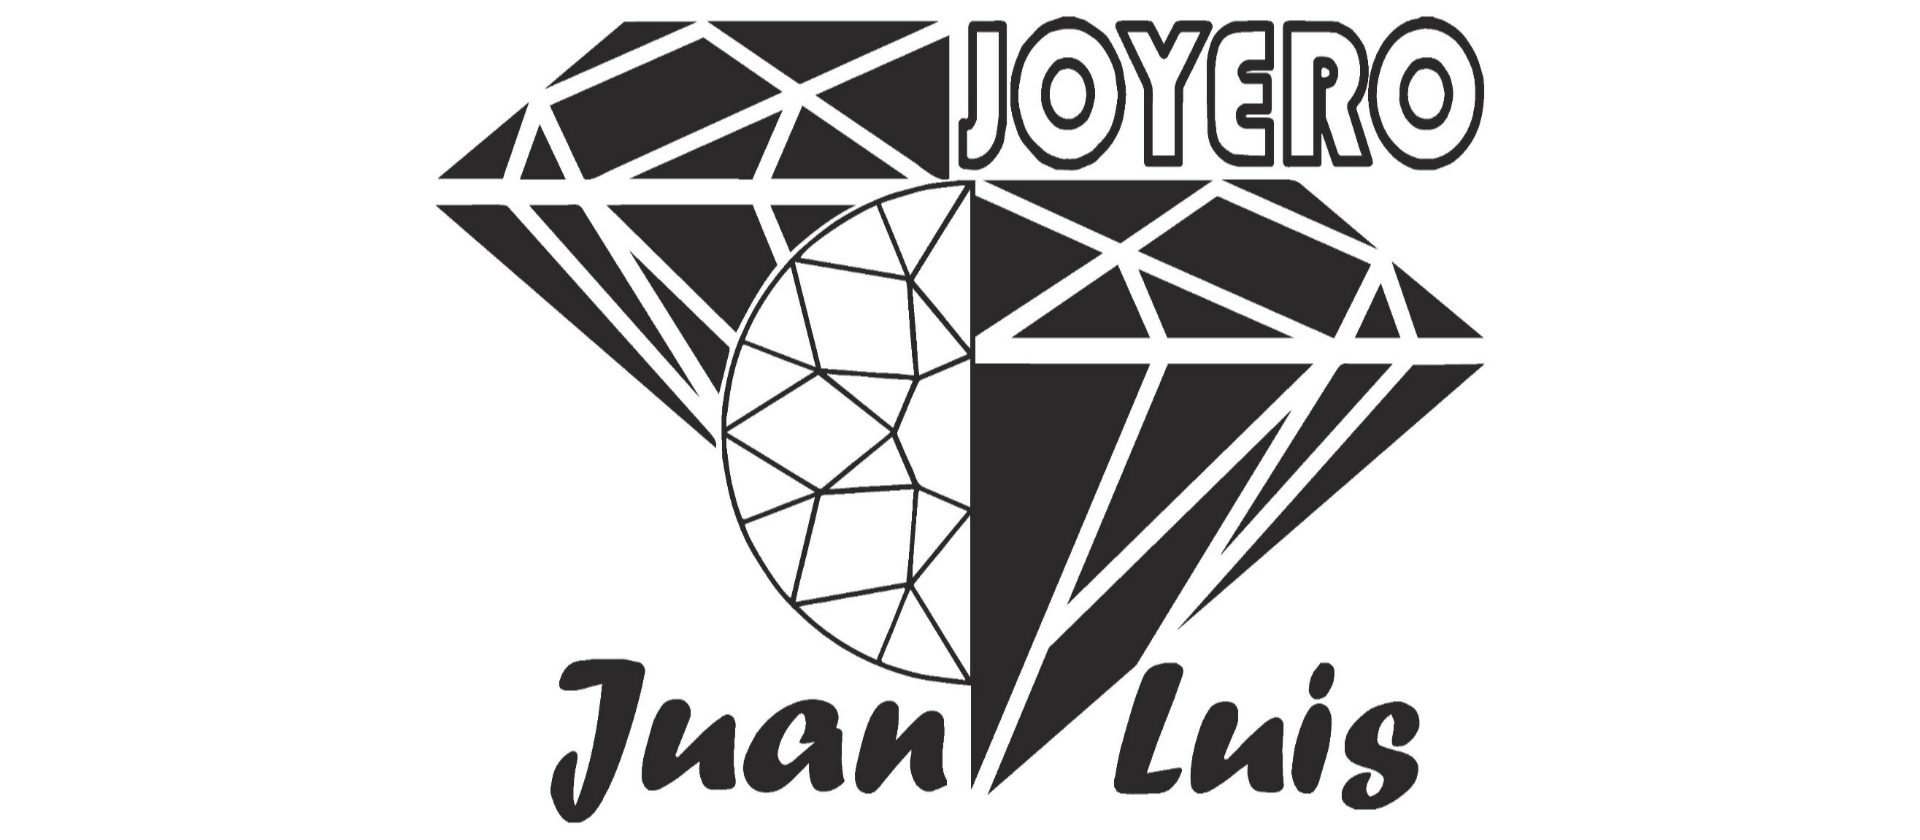 Juan Luis Joyero